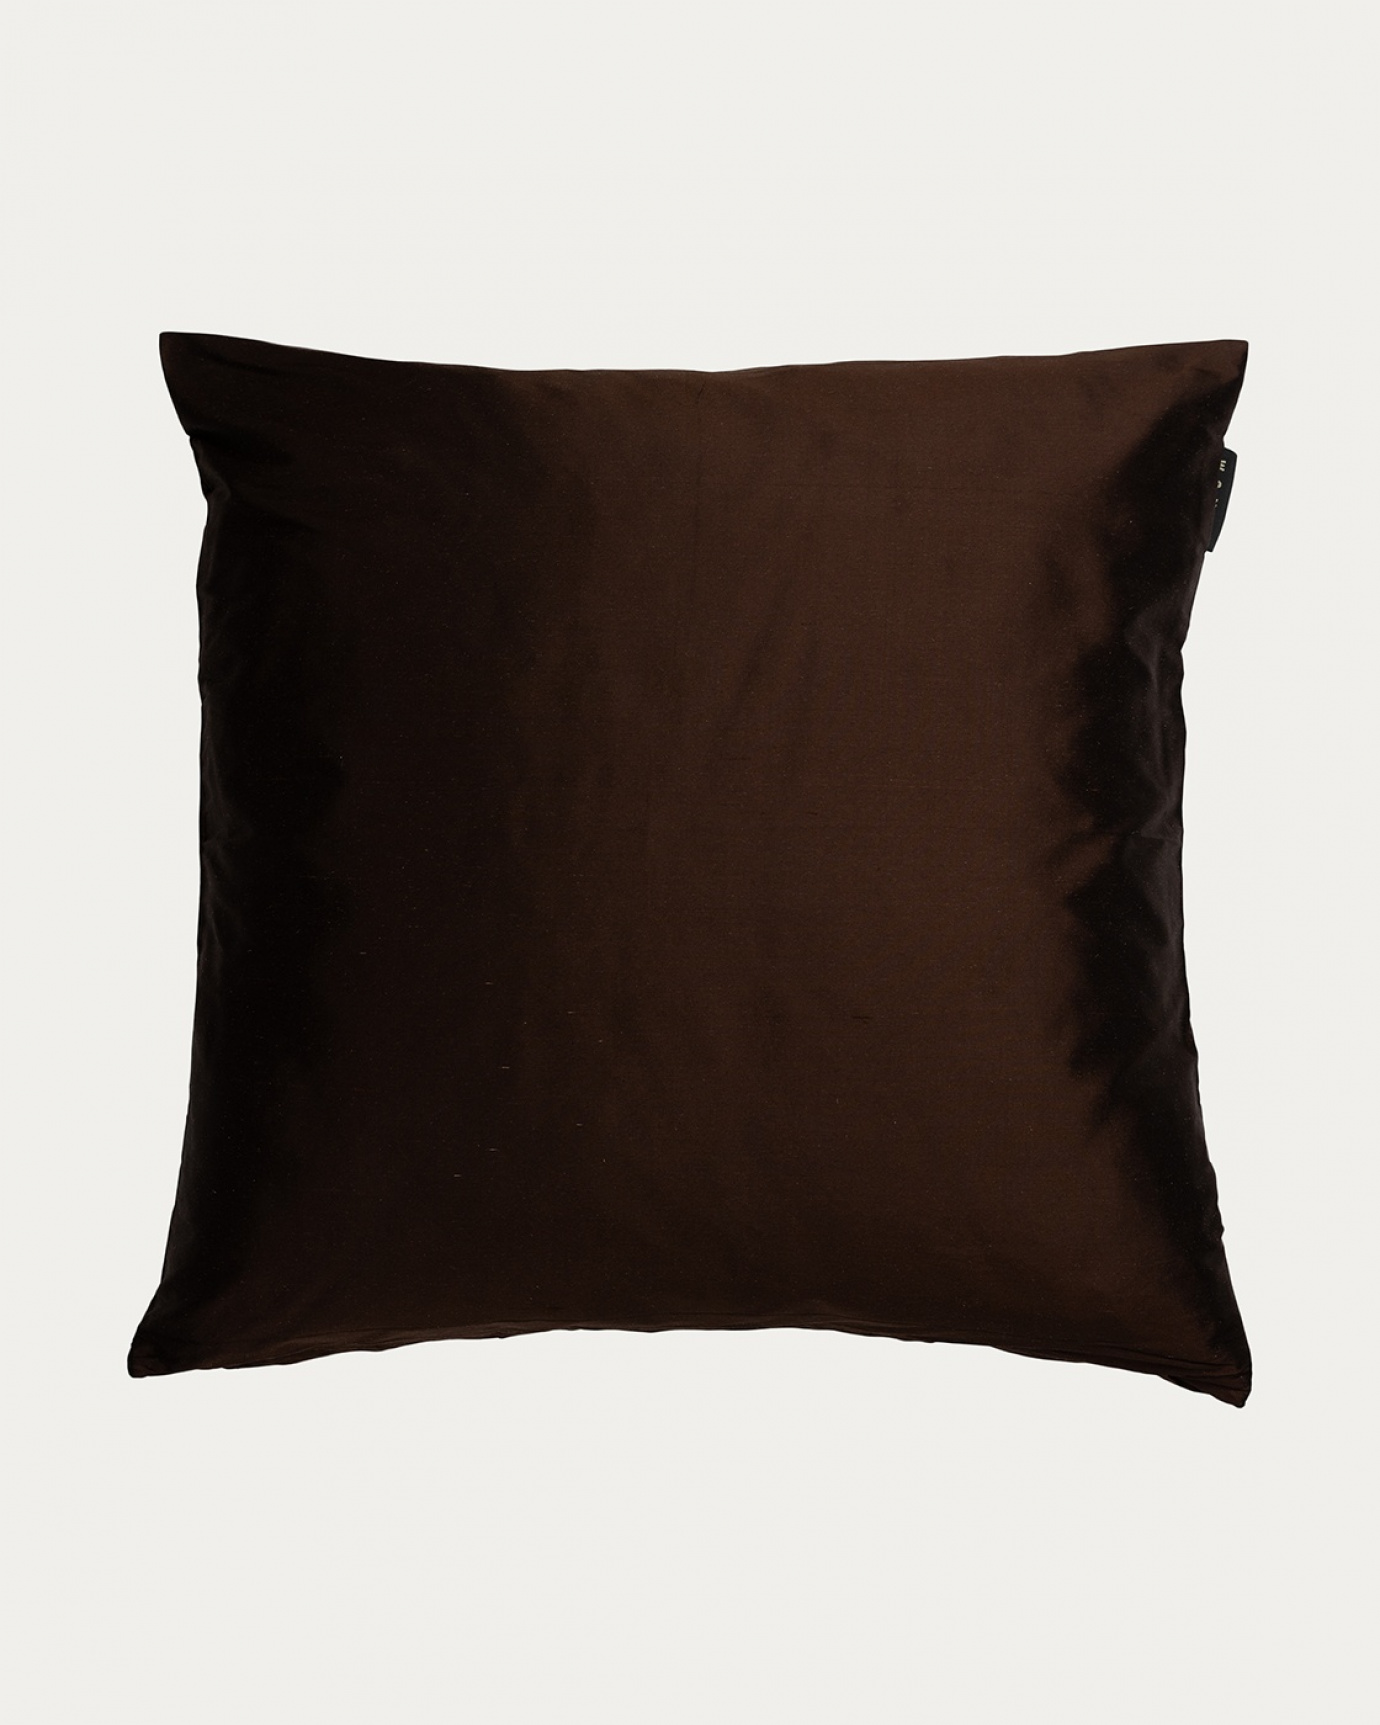 Immagine prodotto marrone scuro caldo DUPION copricuscini in 100% seta dupion di LINUM DESIGN. Dimensioni 50x50 cm.